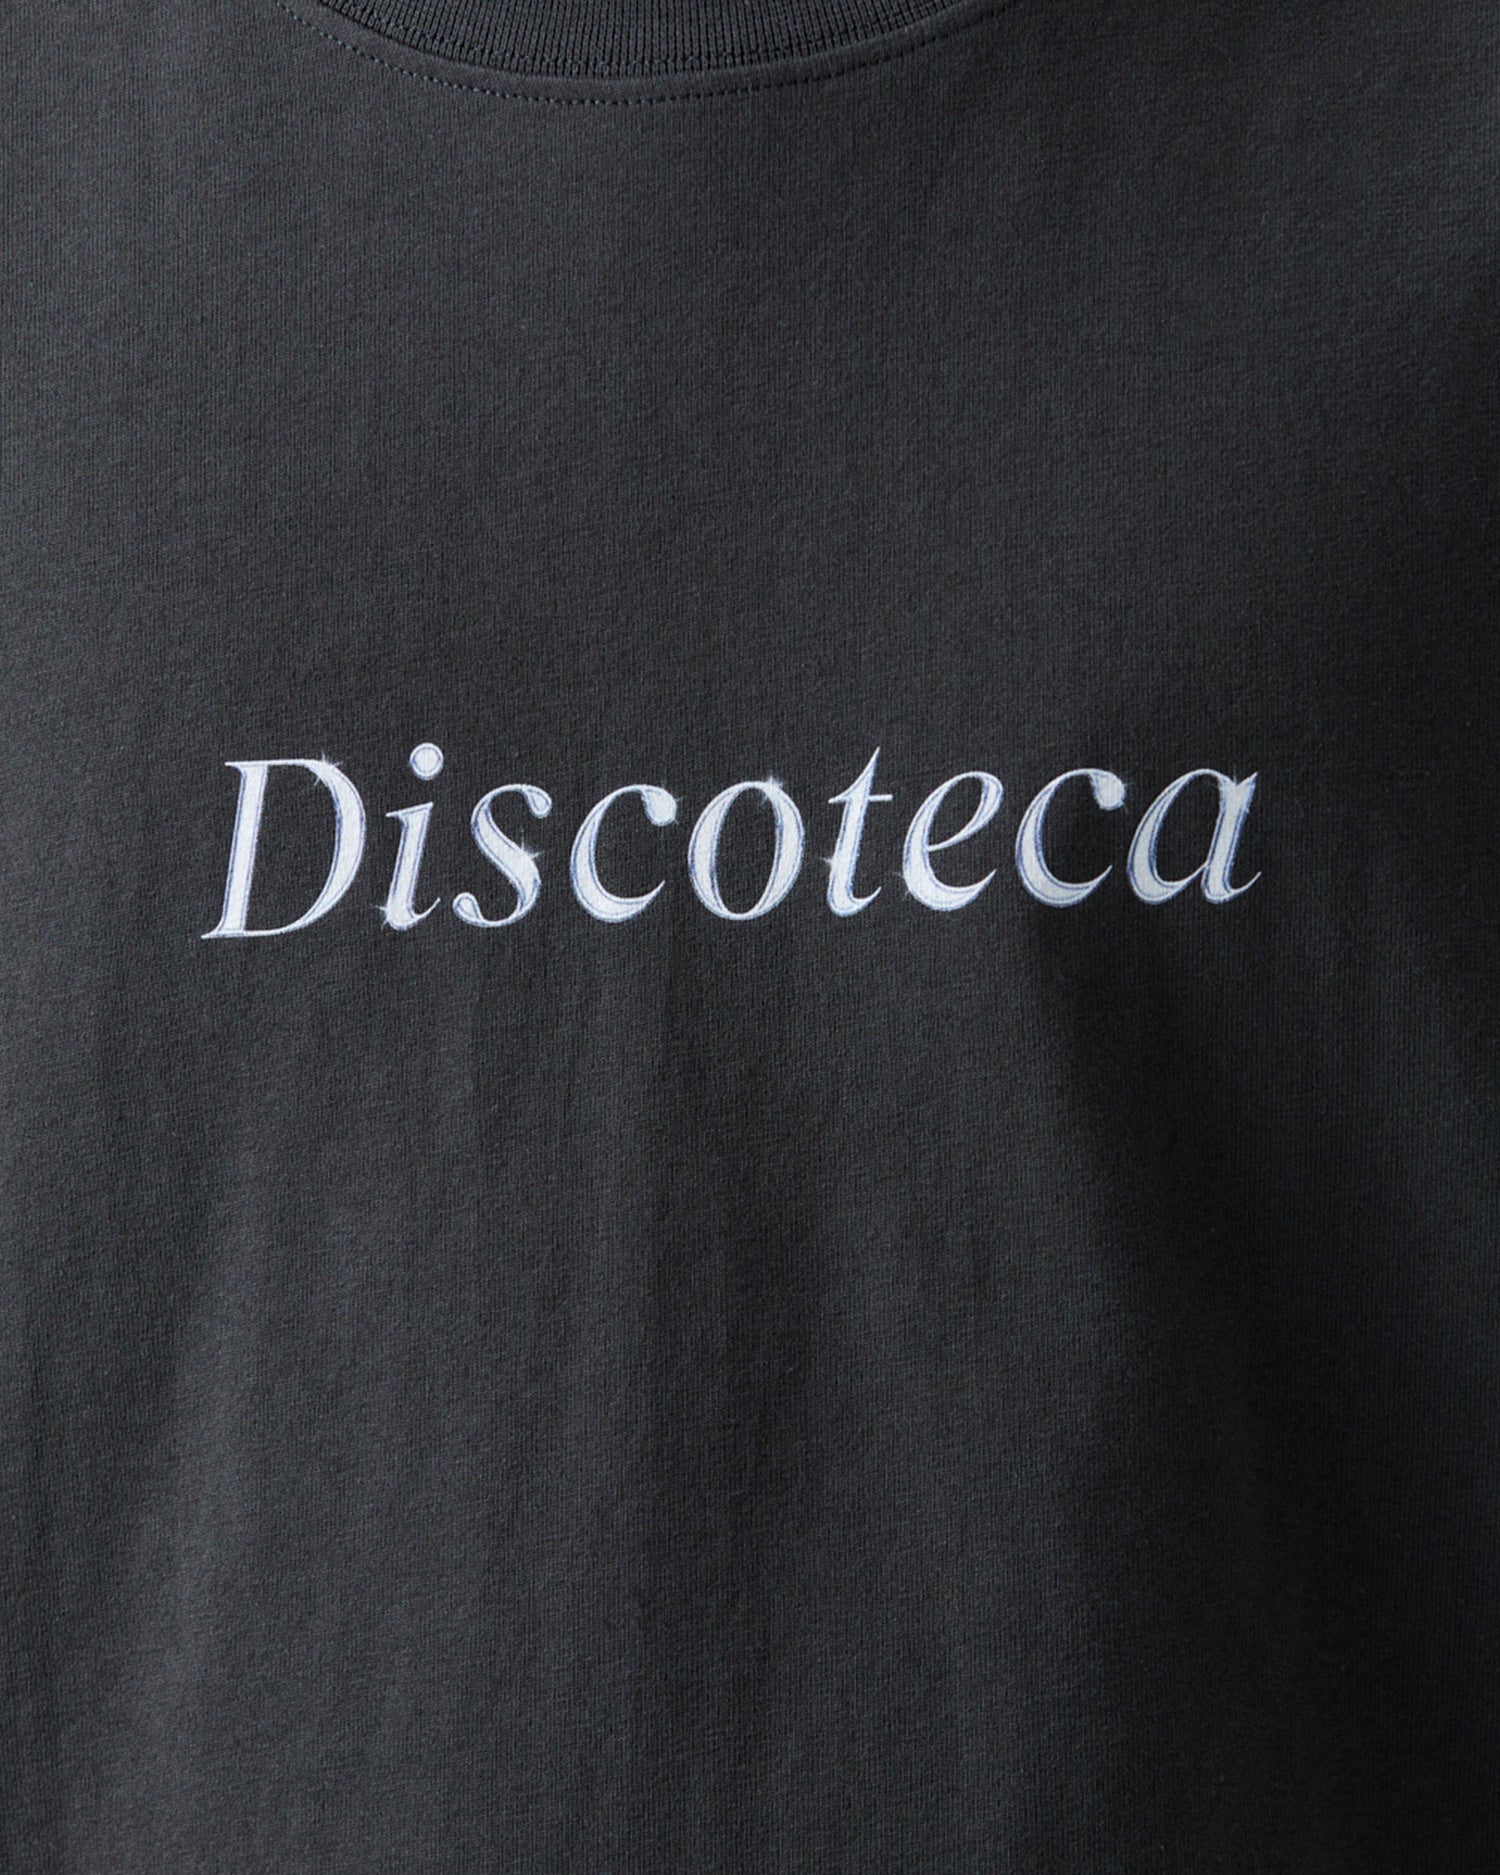 Discoteca T-shirt